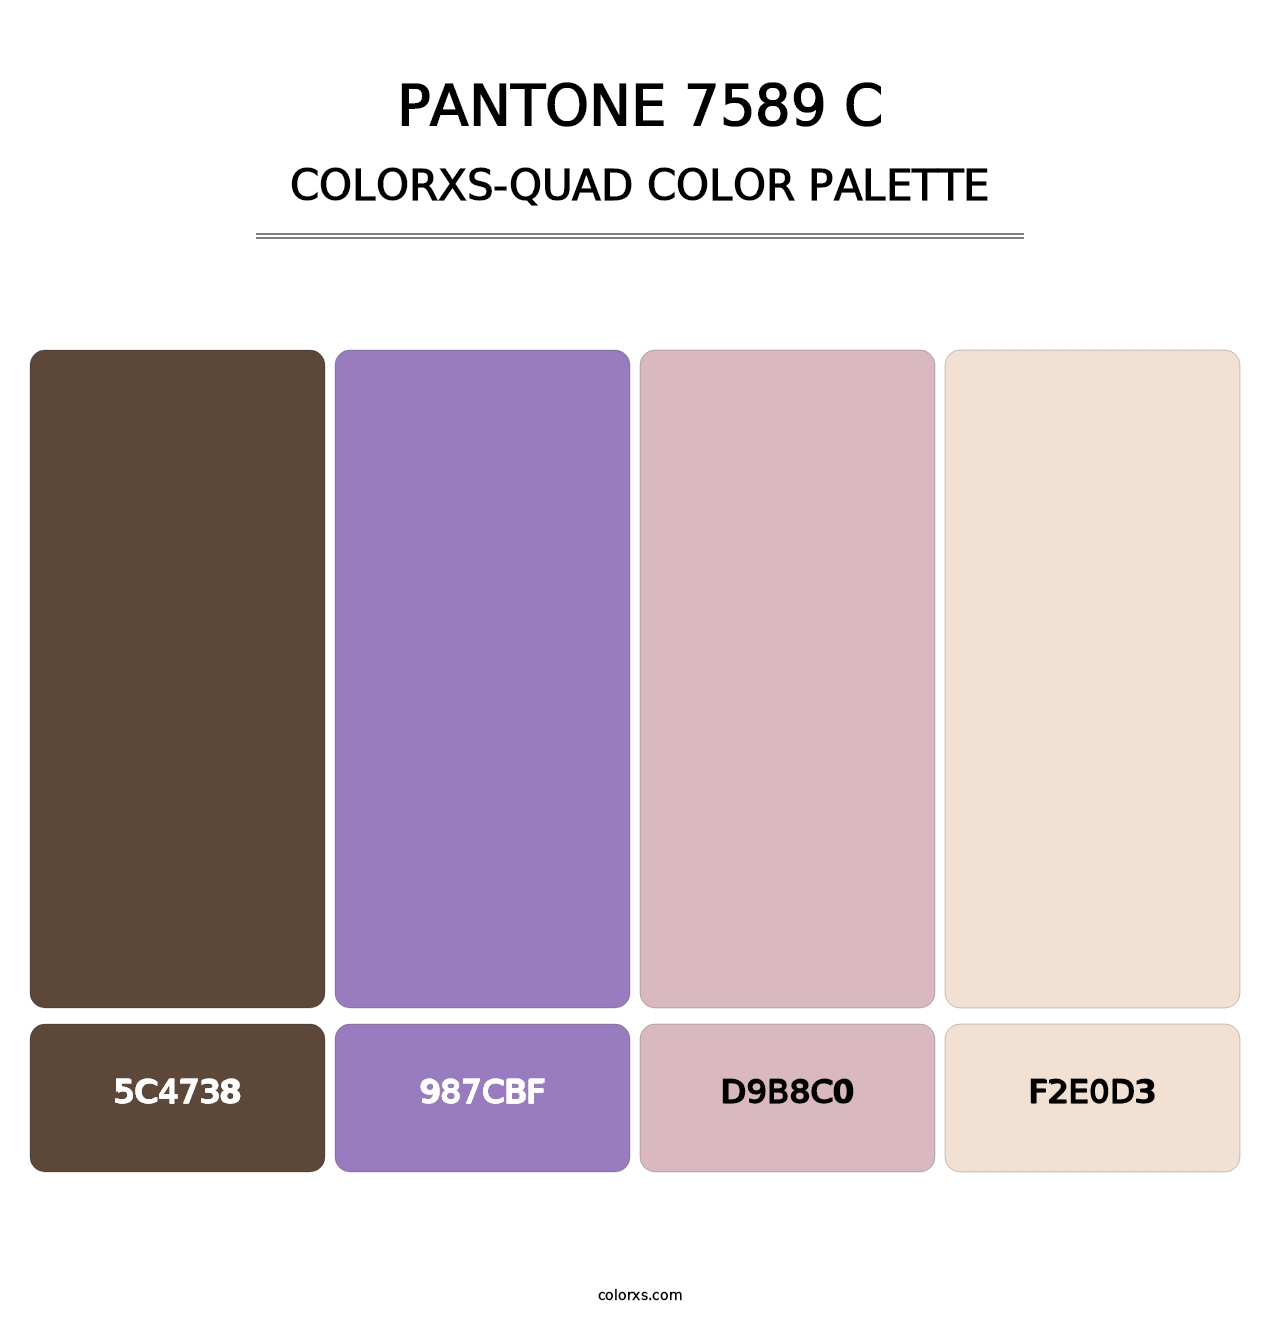 PANTONE 7589 C - Colorxs Quad Palette